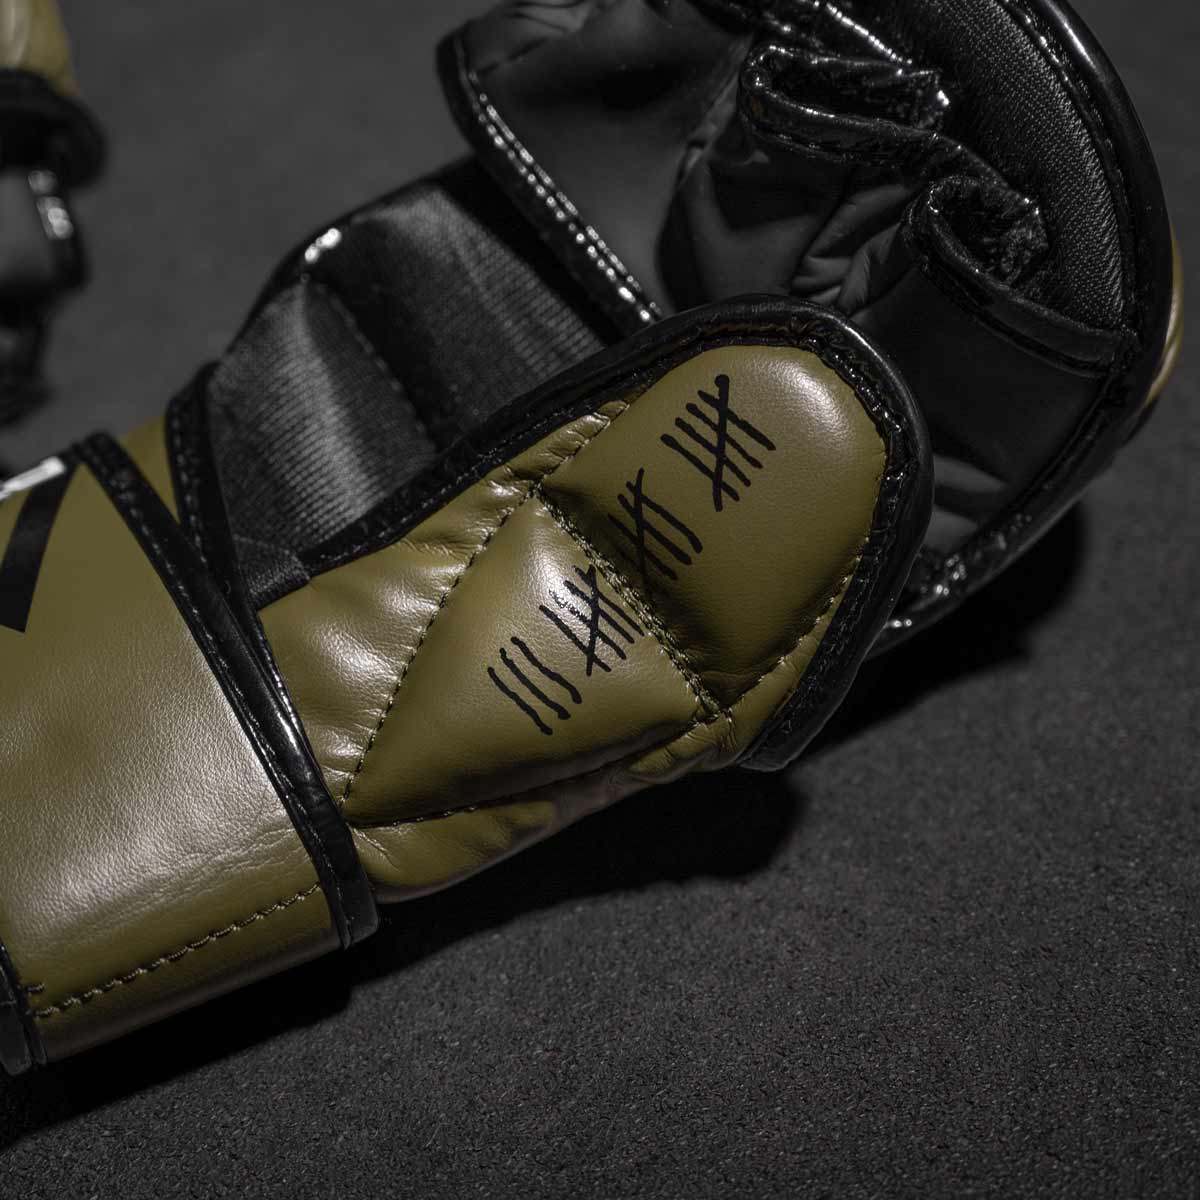 Die Phantom MMA Sparringshandschuhe FIGHT SQUAD in Army Grün in der Innenansicht mit Detail des Daumenschutzes für extra Protection